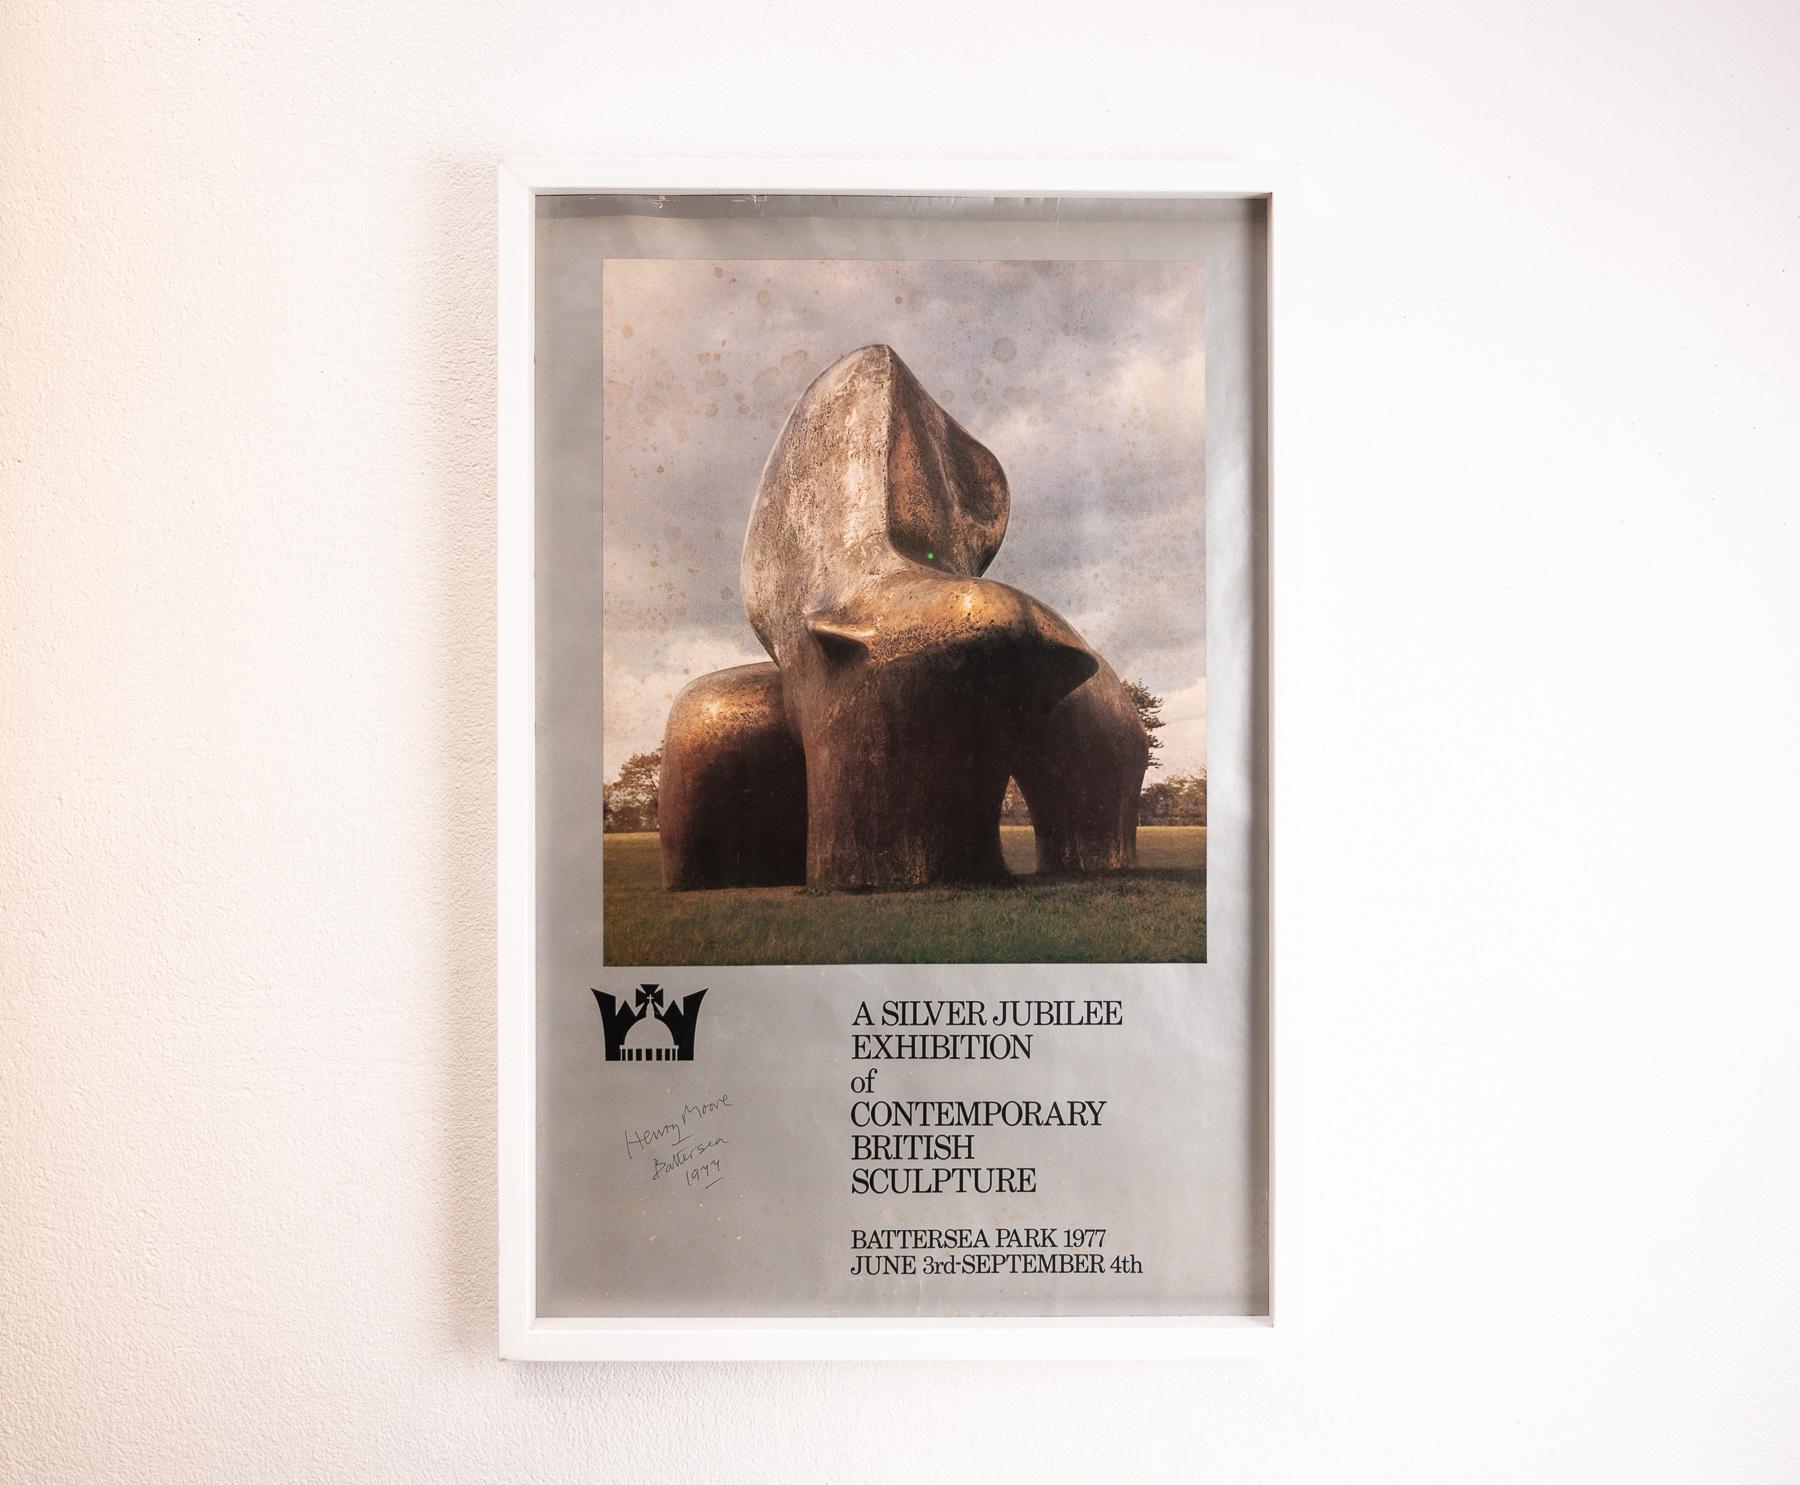 Affiche d'exposition du jubilé d'argent de la sculpture dans le parc de Battersea signée et datée par Henry Moore. Angleterre, 1977

Un exemplaire signé de cette affiche se trouve dans la collection de la fondation Henry Moore.

L'œuvre figurant